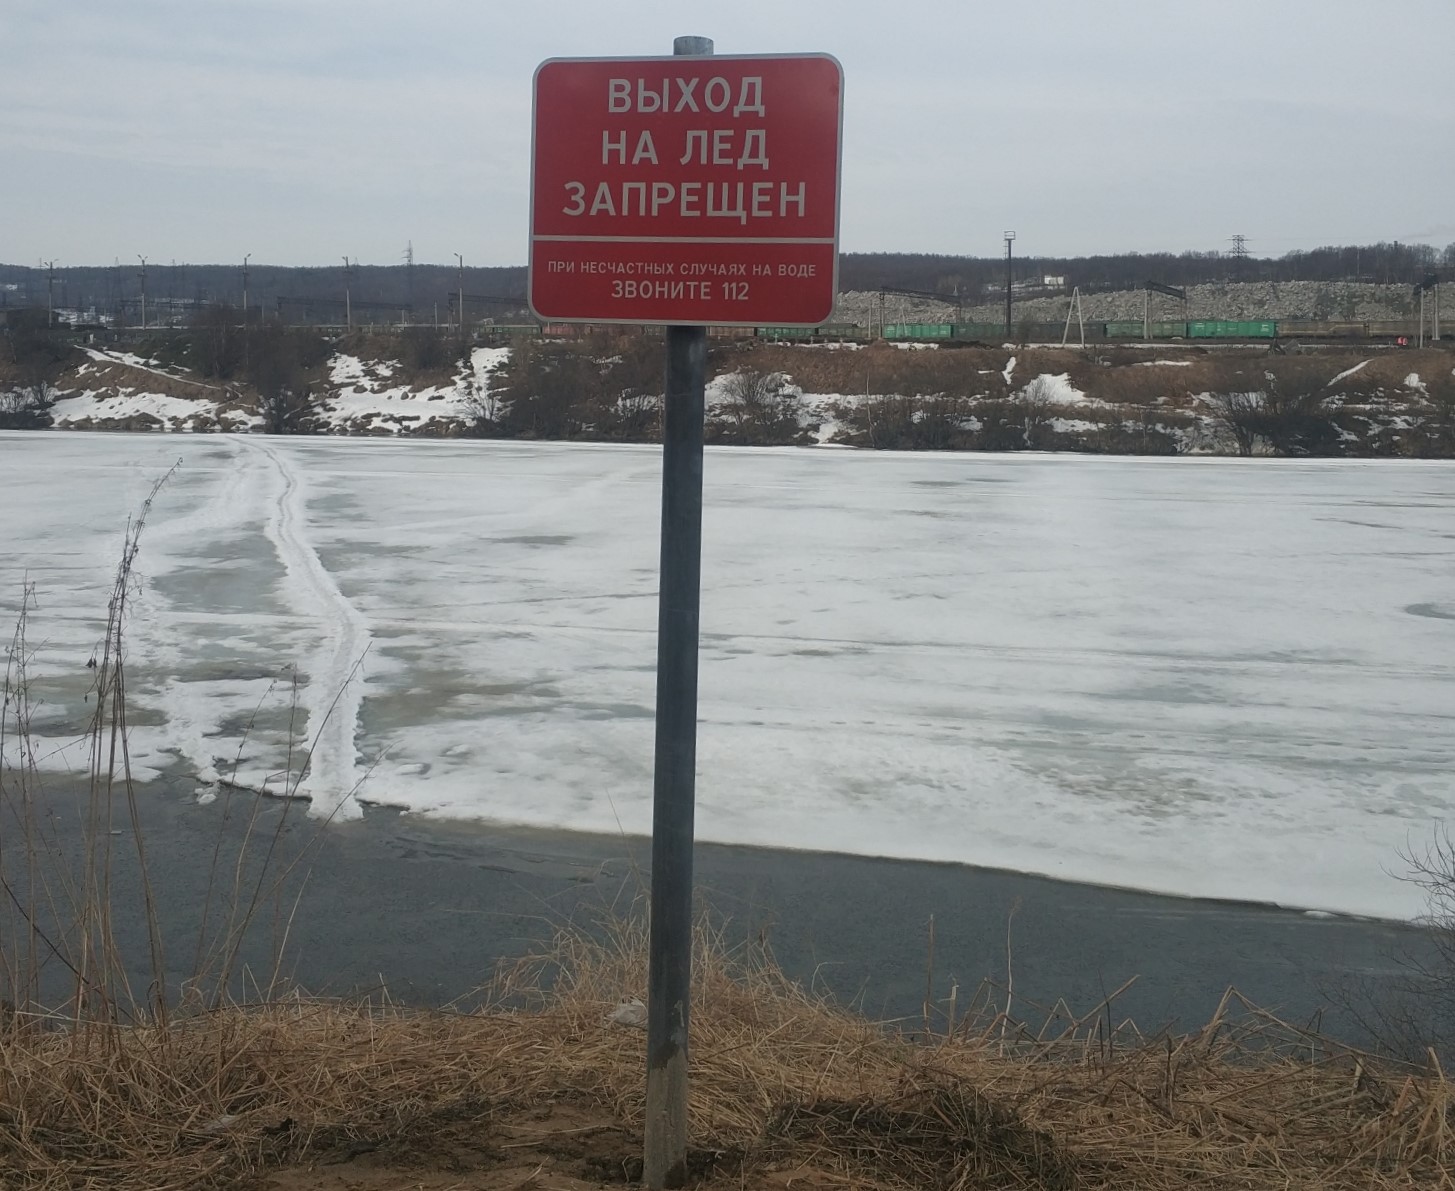 Внимание! Ограничение выхода на лед!